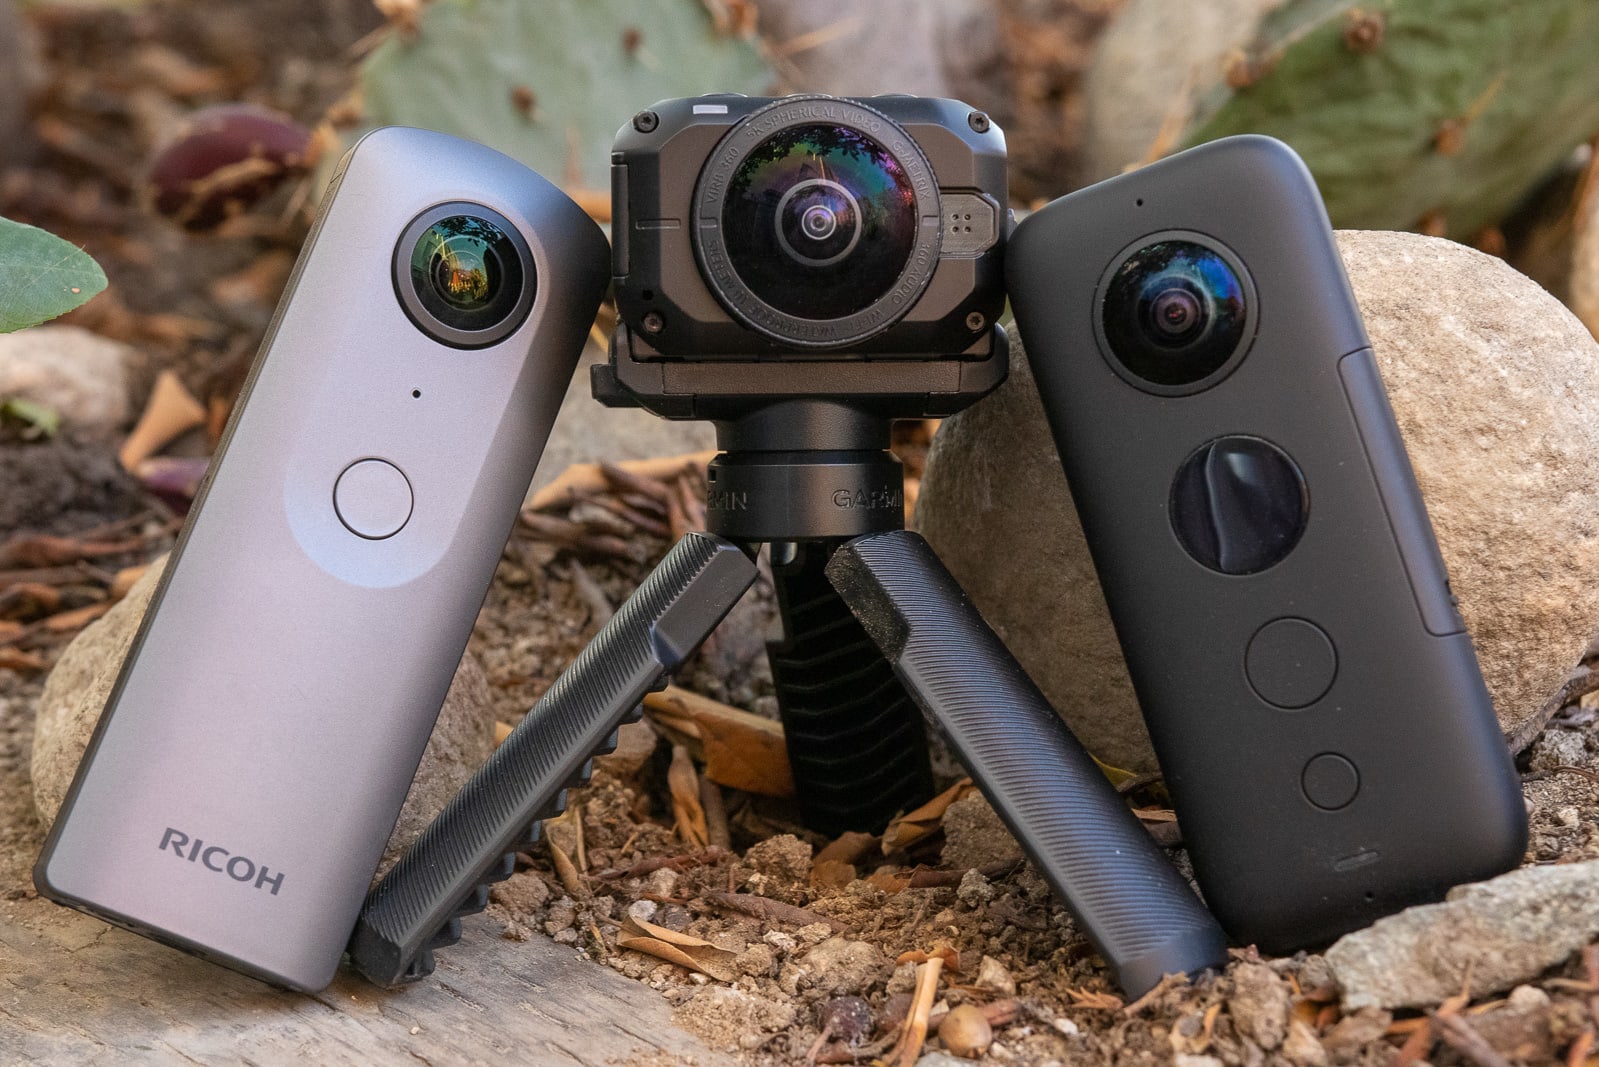 360-degree cameras